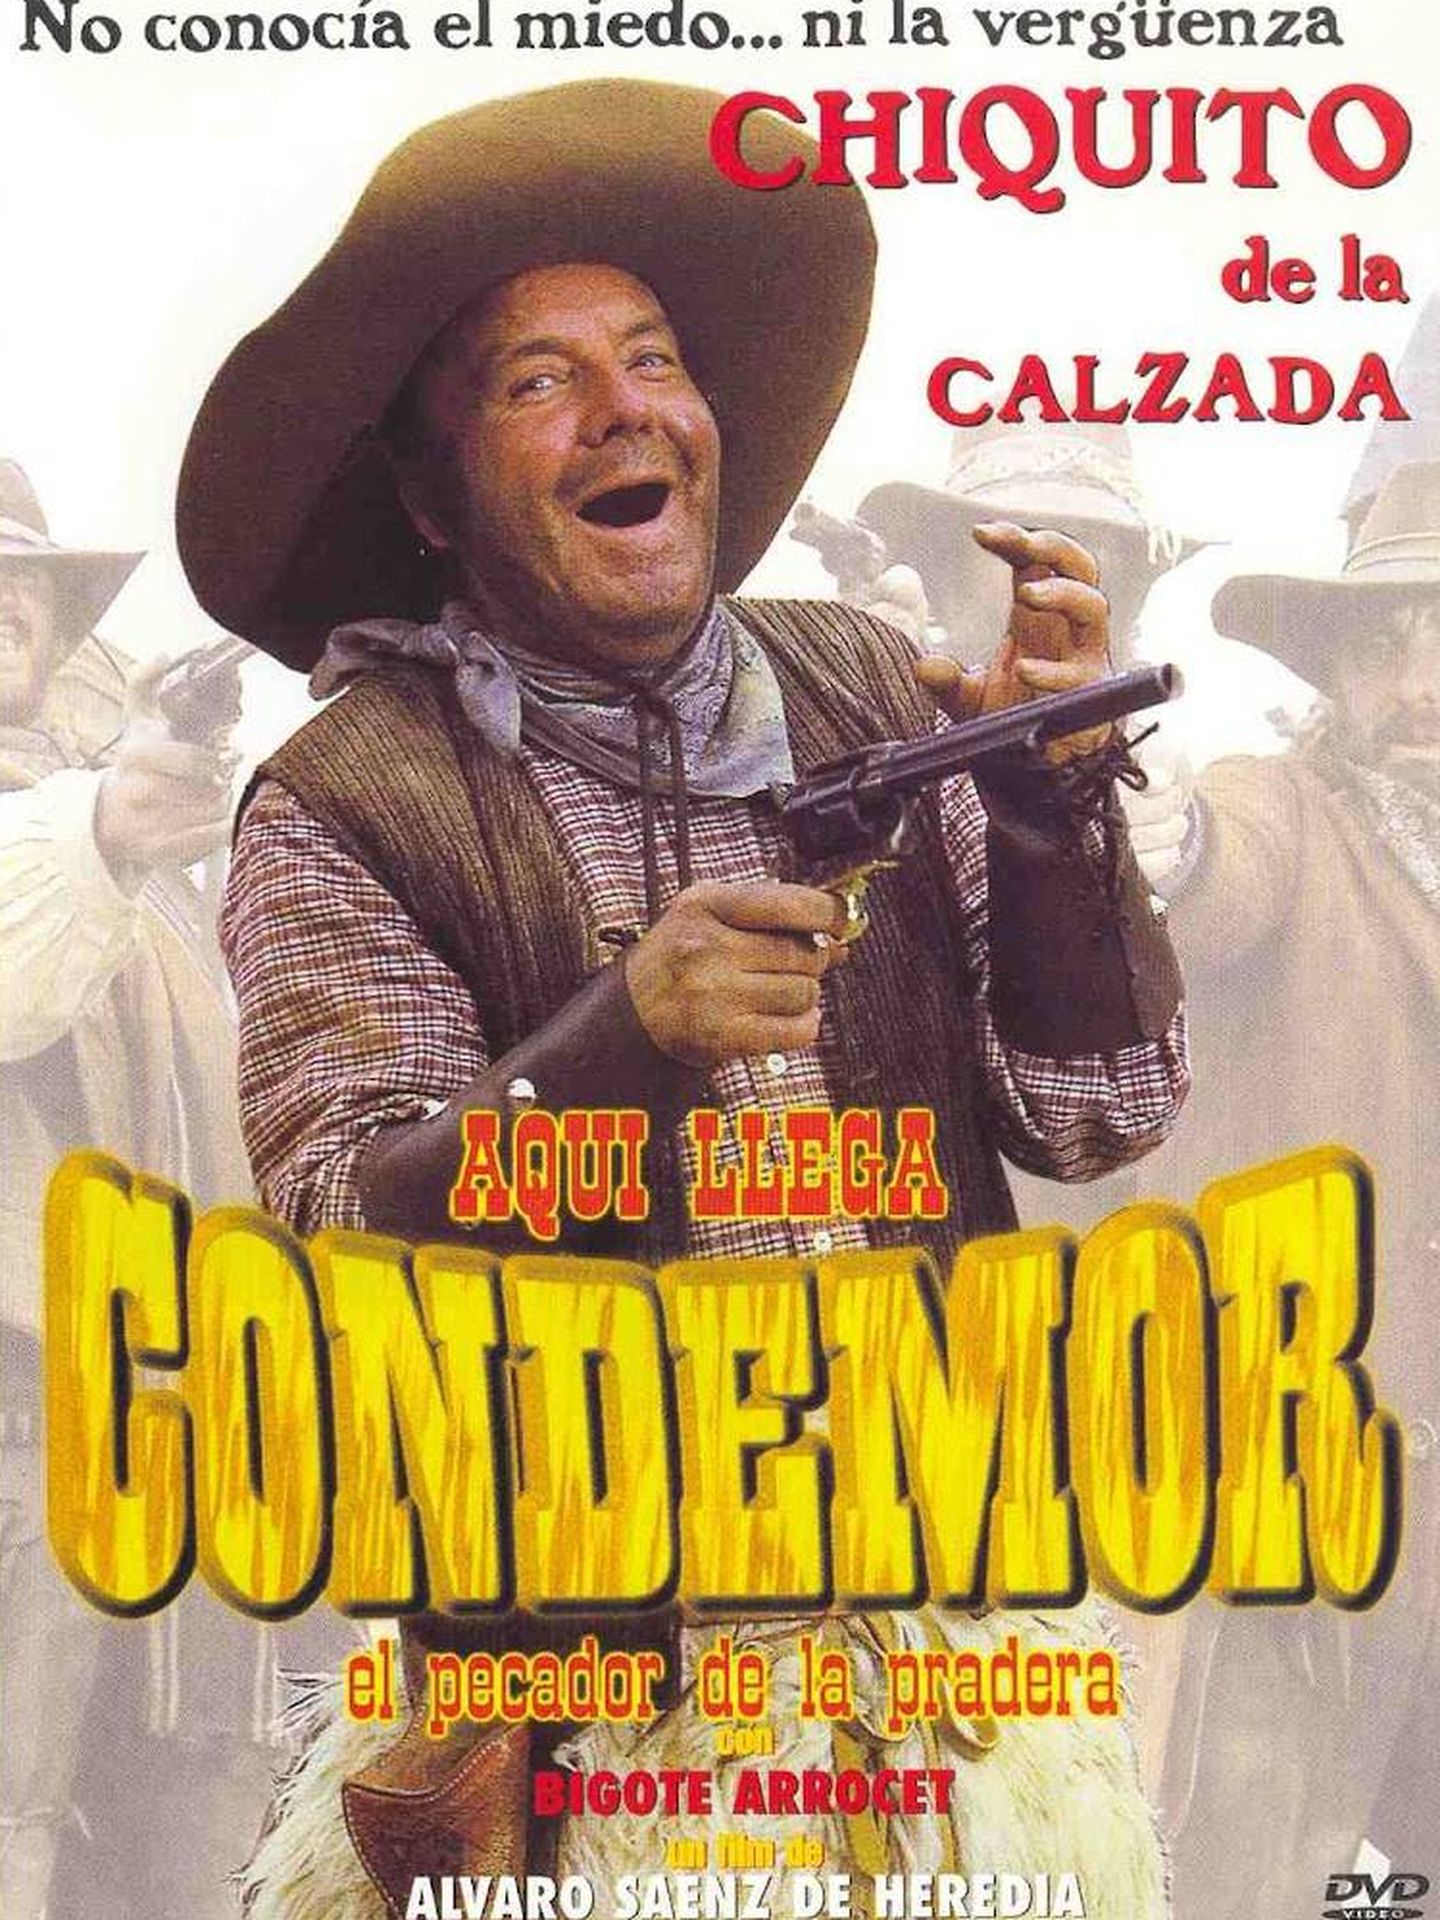 'Aquí llega Condemor, el pecador de la pradera', la primera película protagonizada por Chiquito de la Calzada 